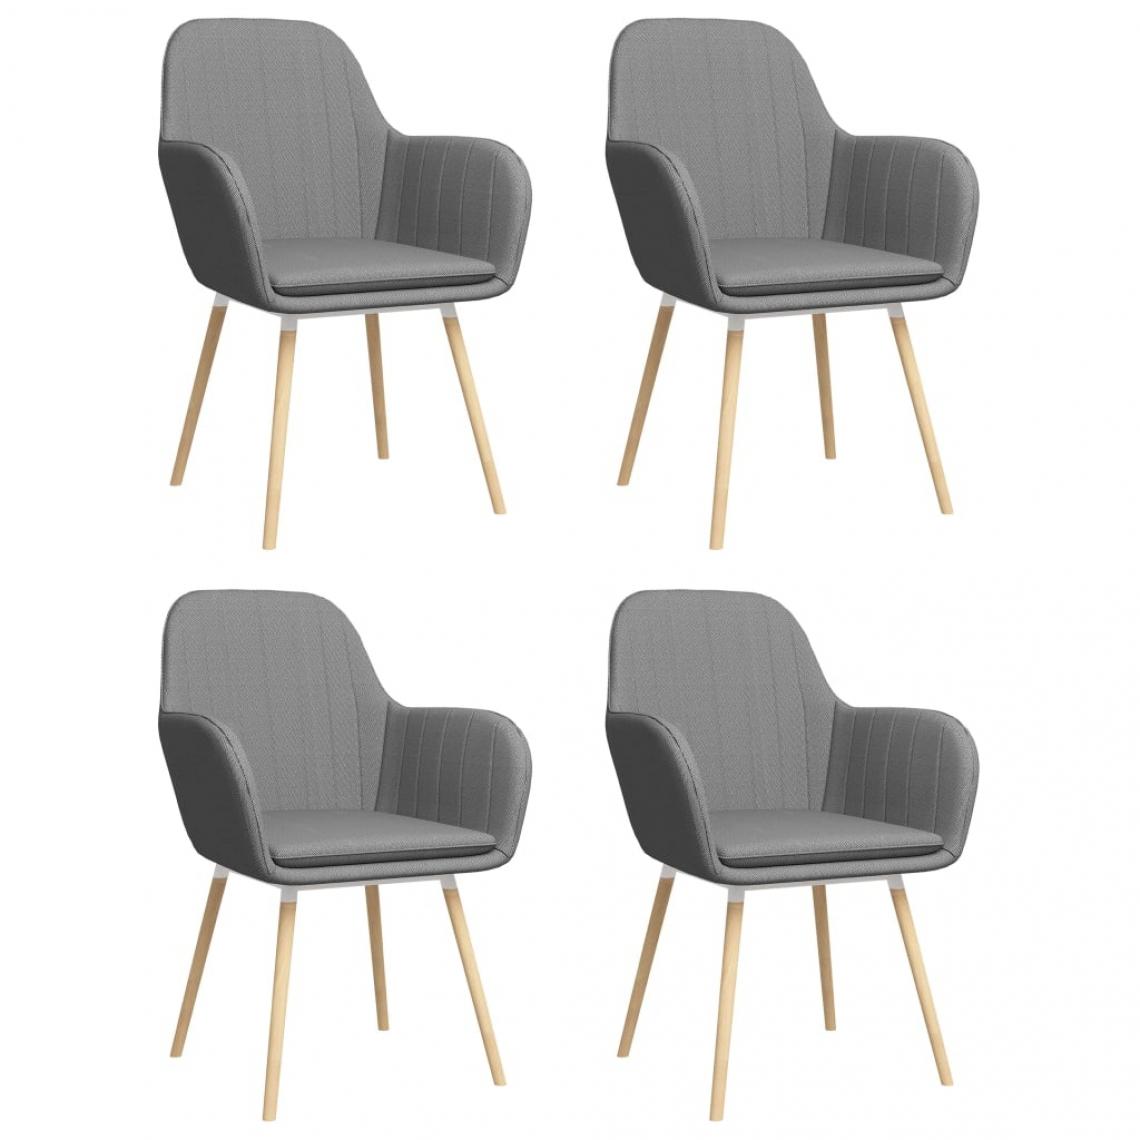 Decoshop26 - Lot de 4 chaises de salle à manger cuisine design moderne tissu gris clair CDS022094 - Chaises